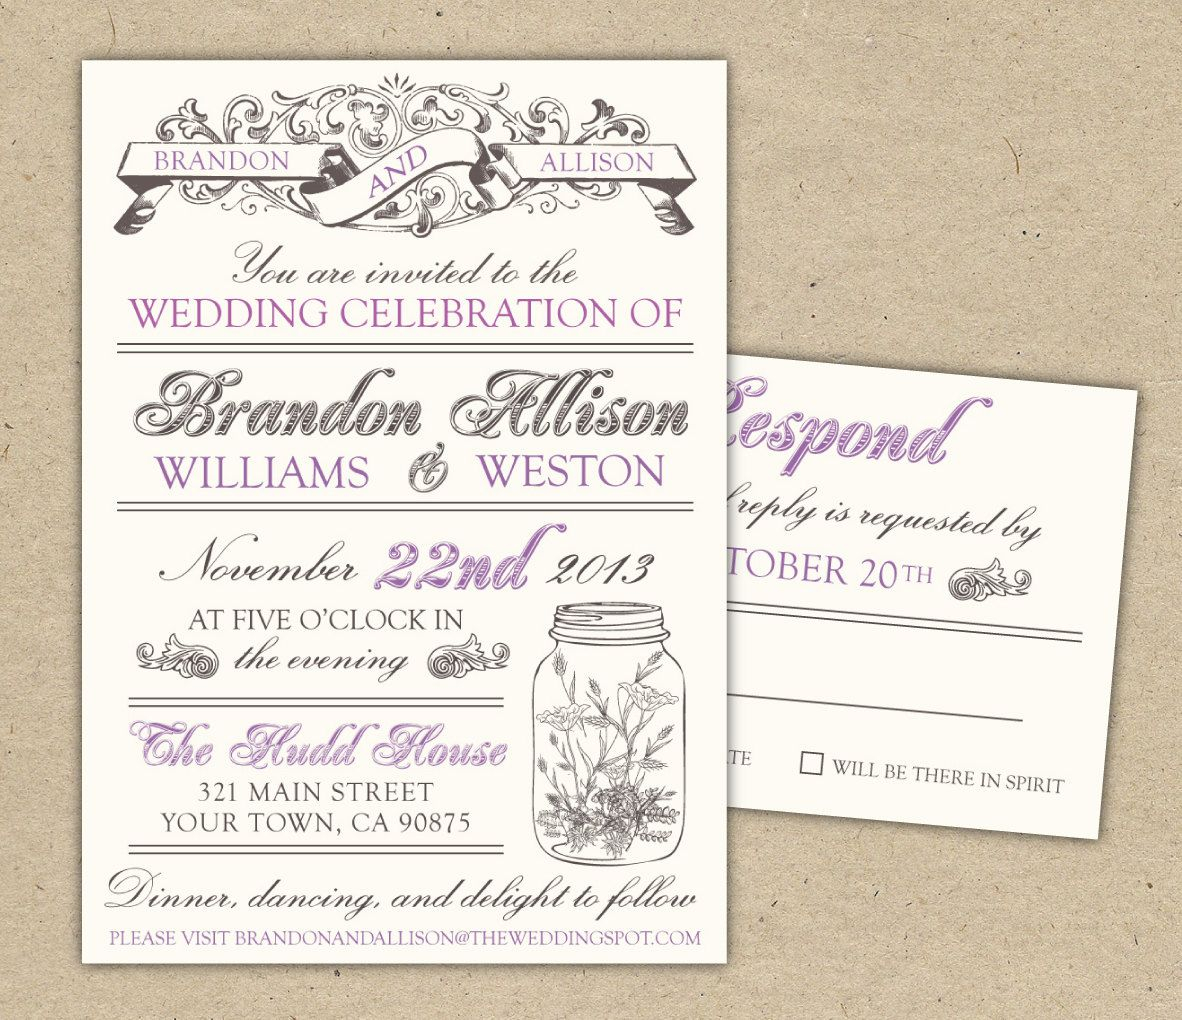 Free Printable Wedding Invitation Templates Download Free Templates For Invitations Free Printable Vintage Wedding